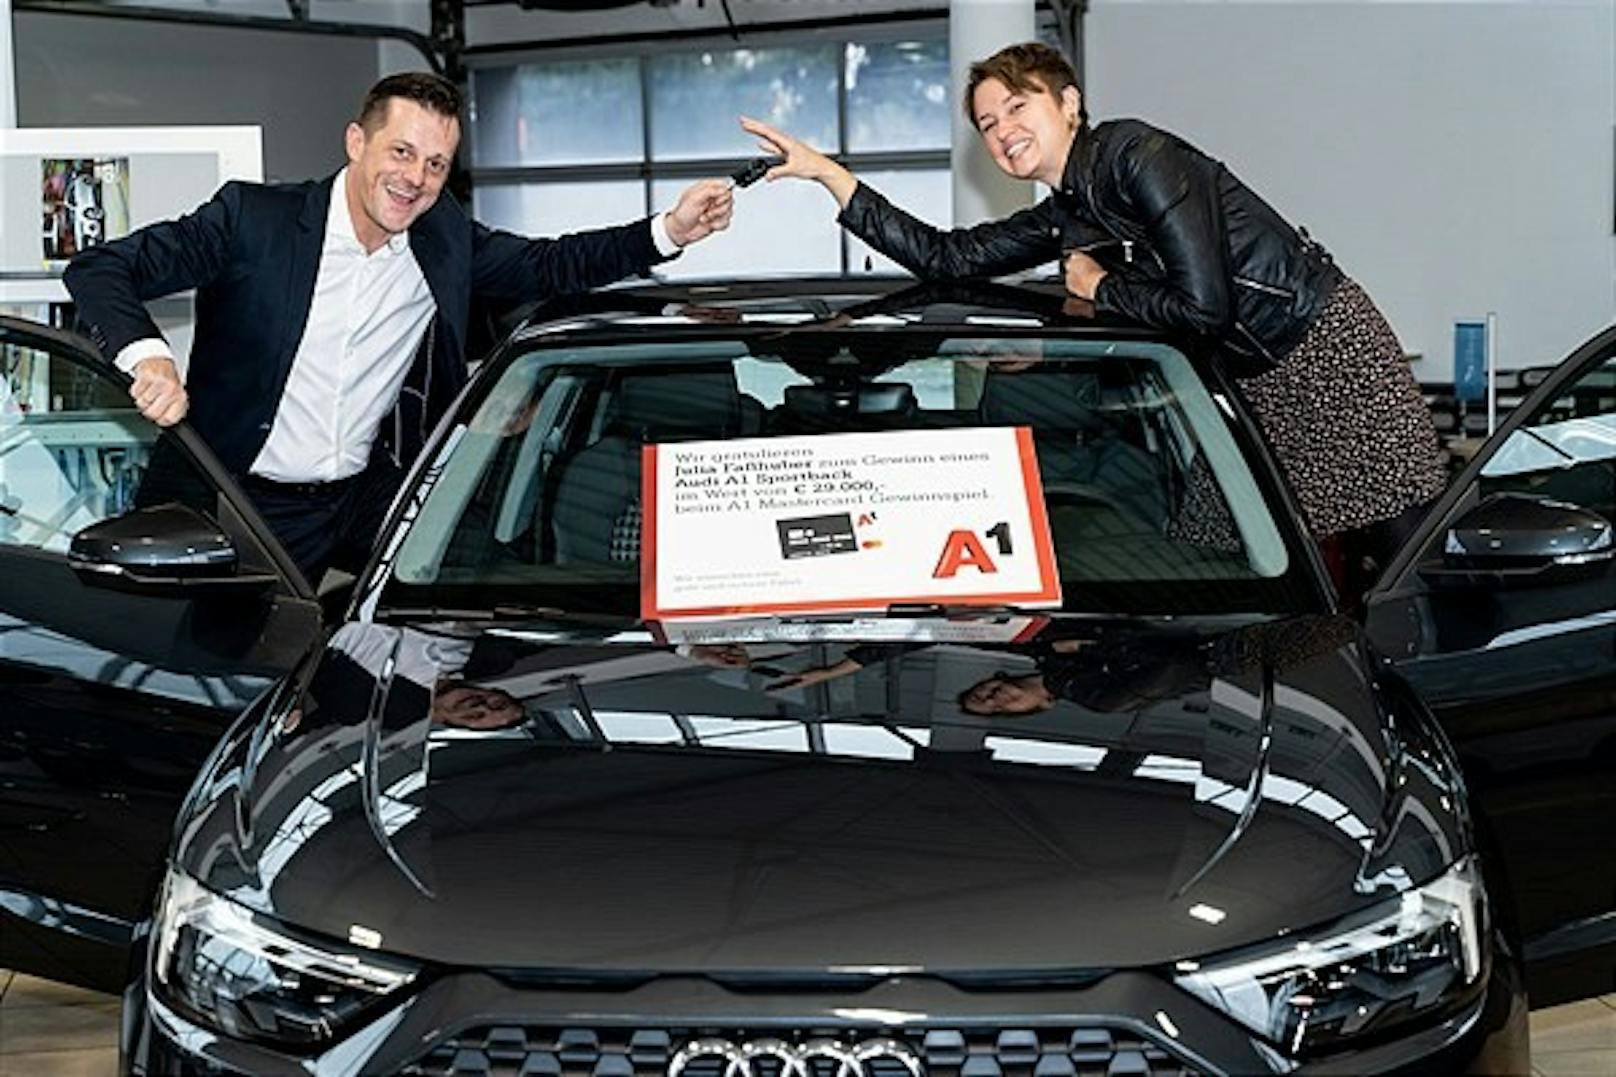 Steirerin gewinnt mit der A1 Mastercard einen Audi A1.